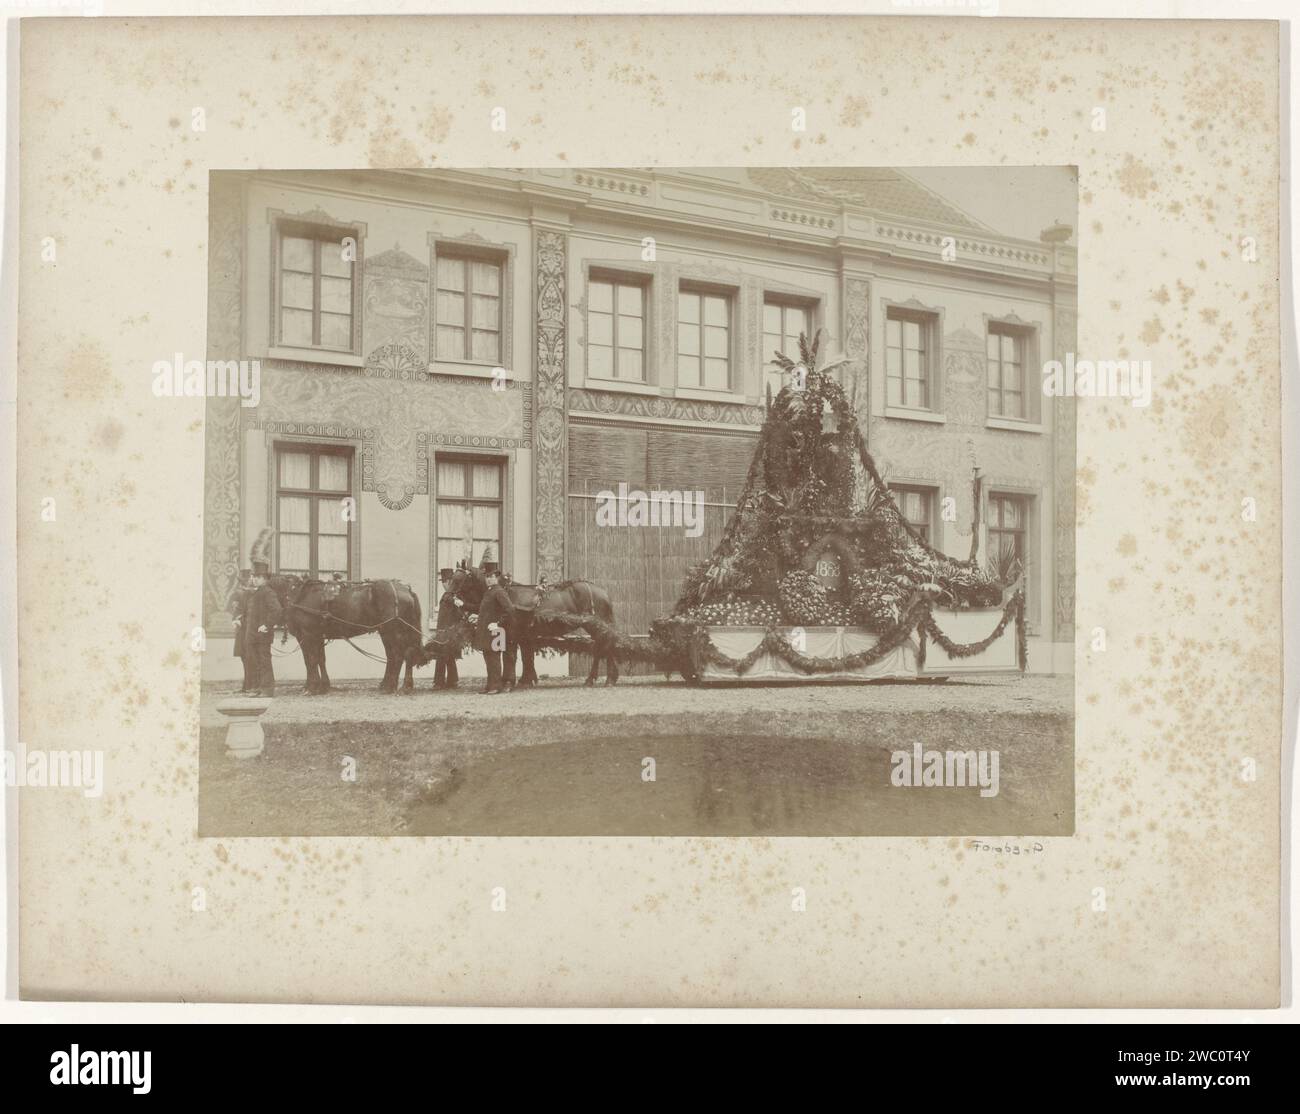 Galleggia in occasione delle feste dell'indipendenza a Dordrecht, Anonimo, 1888 fotografa il documento di Dordrecht. Carro stampato in cartone con albume, auto trionfale Dordrecht Foto Stock